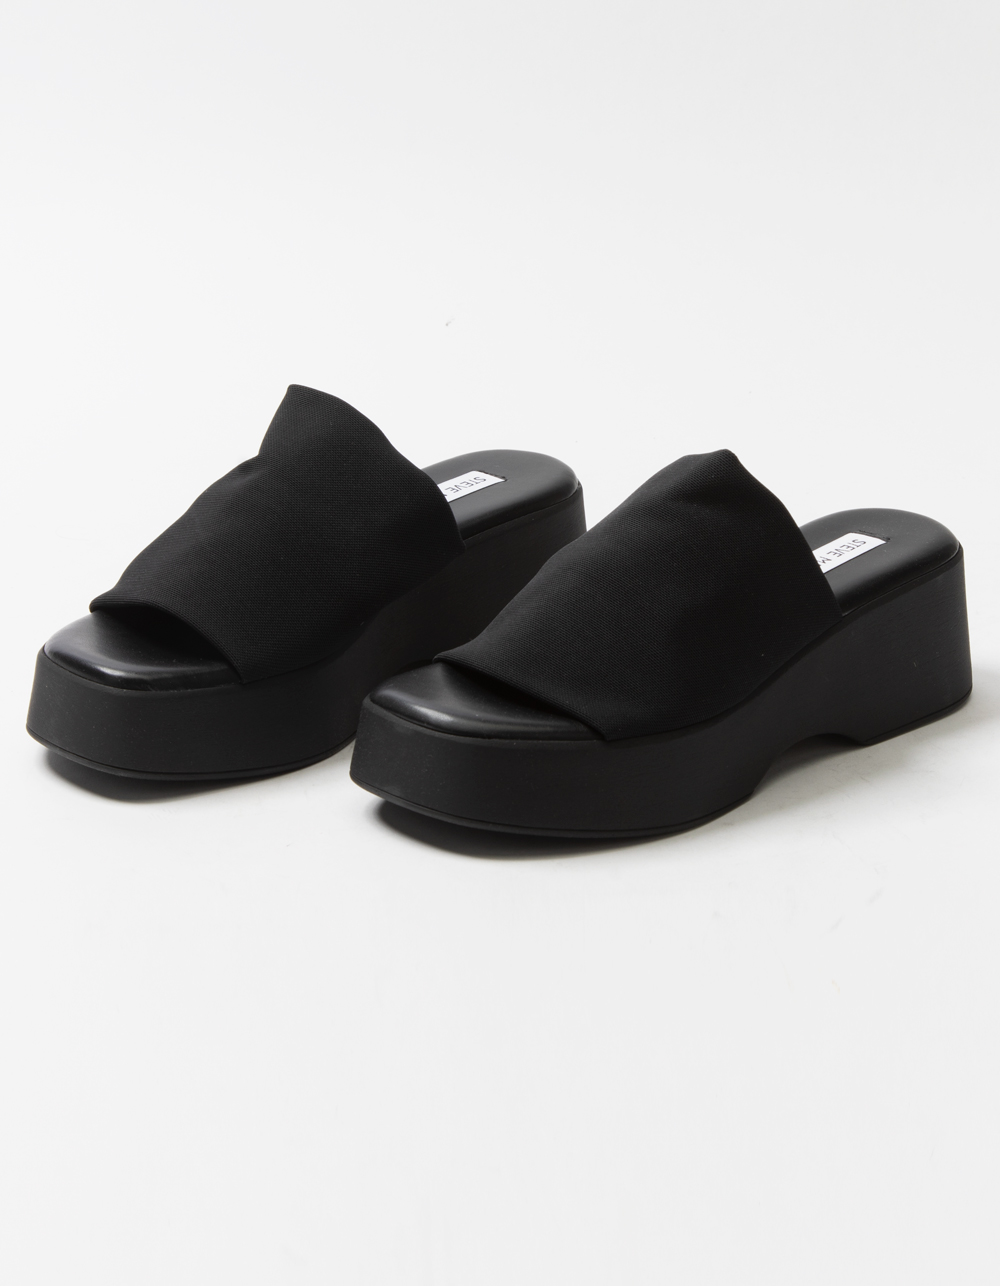 Steve Madden Slinky Black Platform Slide Sandals | lupon.gov.ph